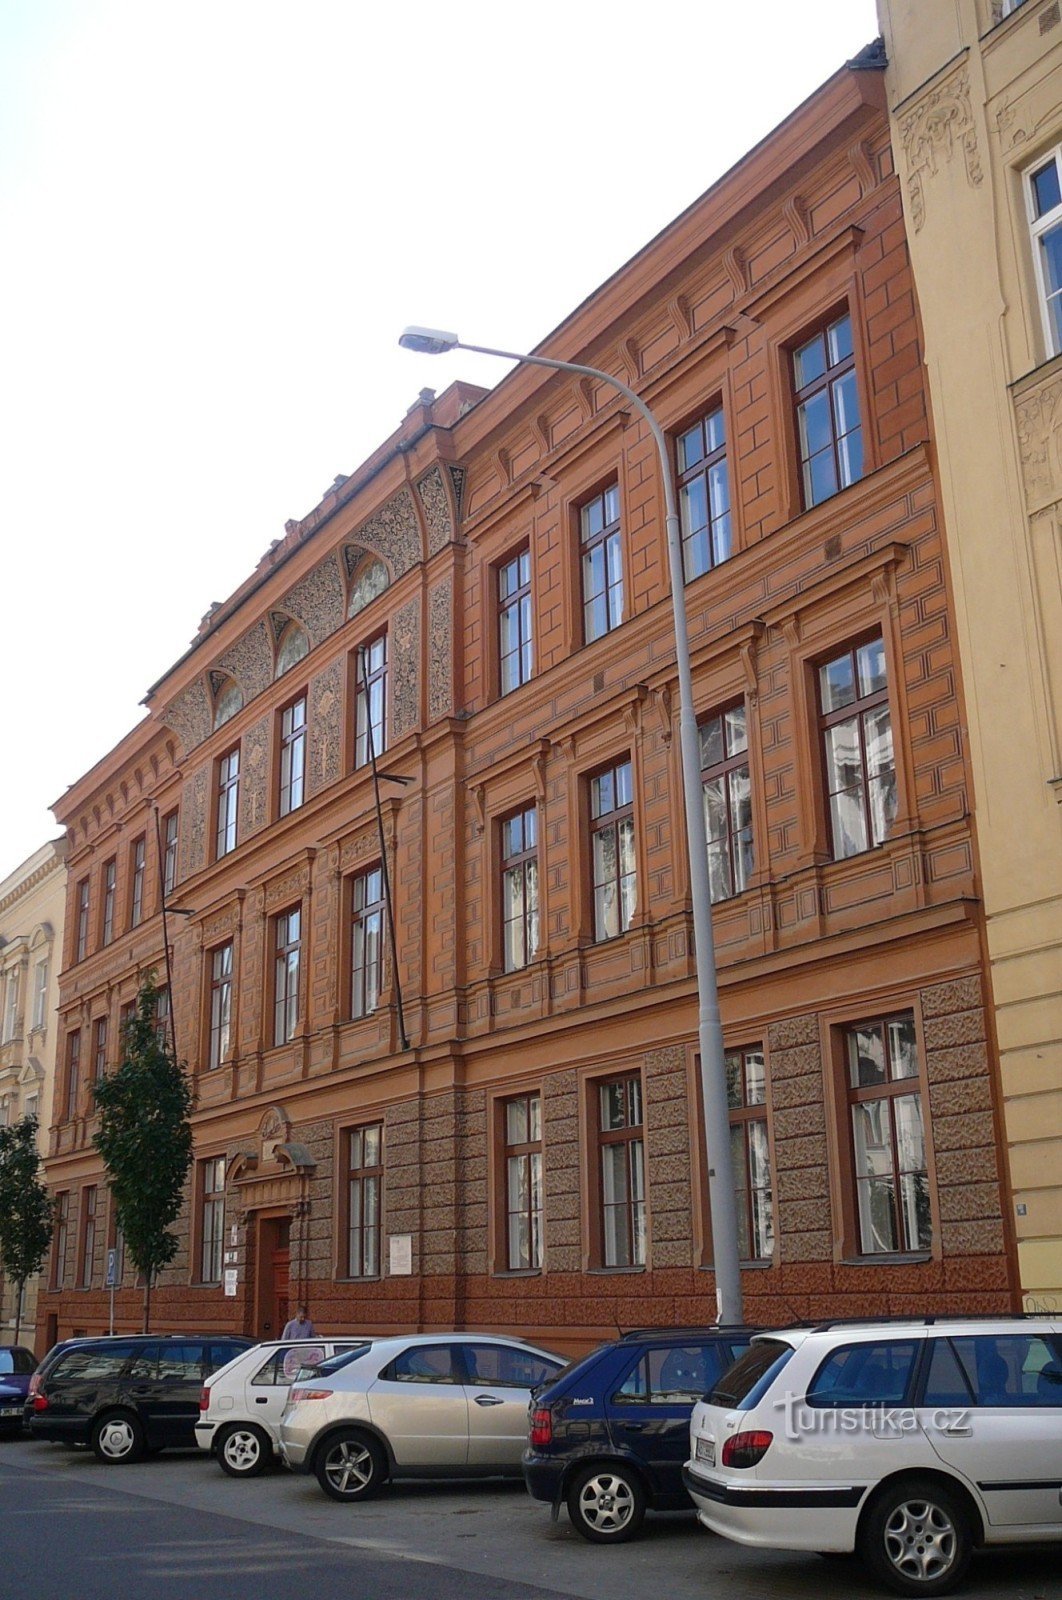 School at Jaselská 7 by architect Antonín Terbich